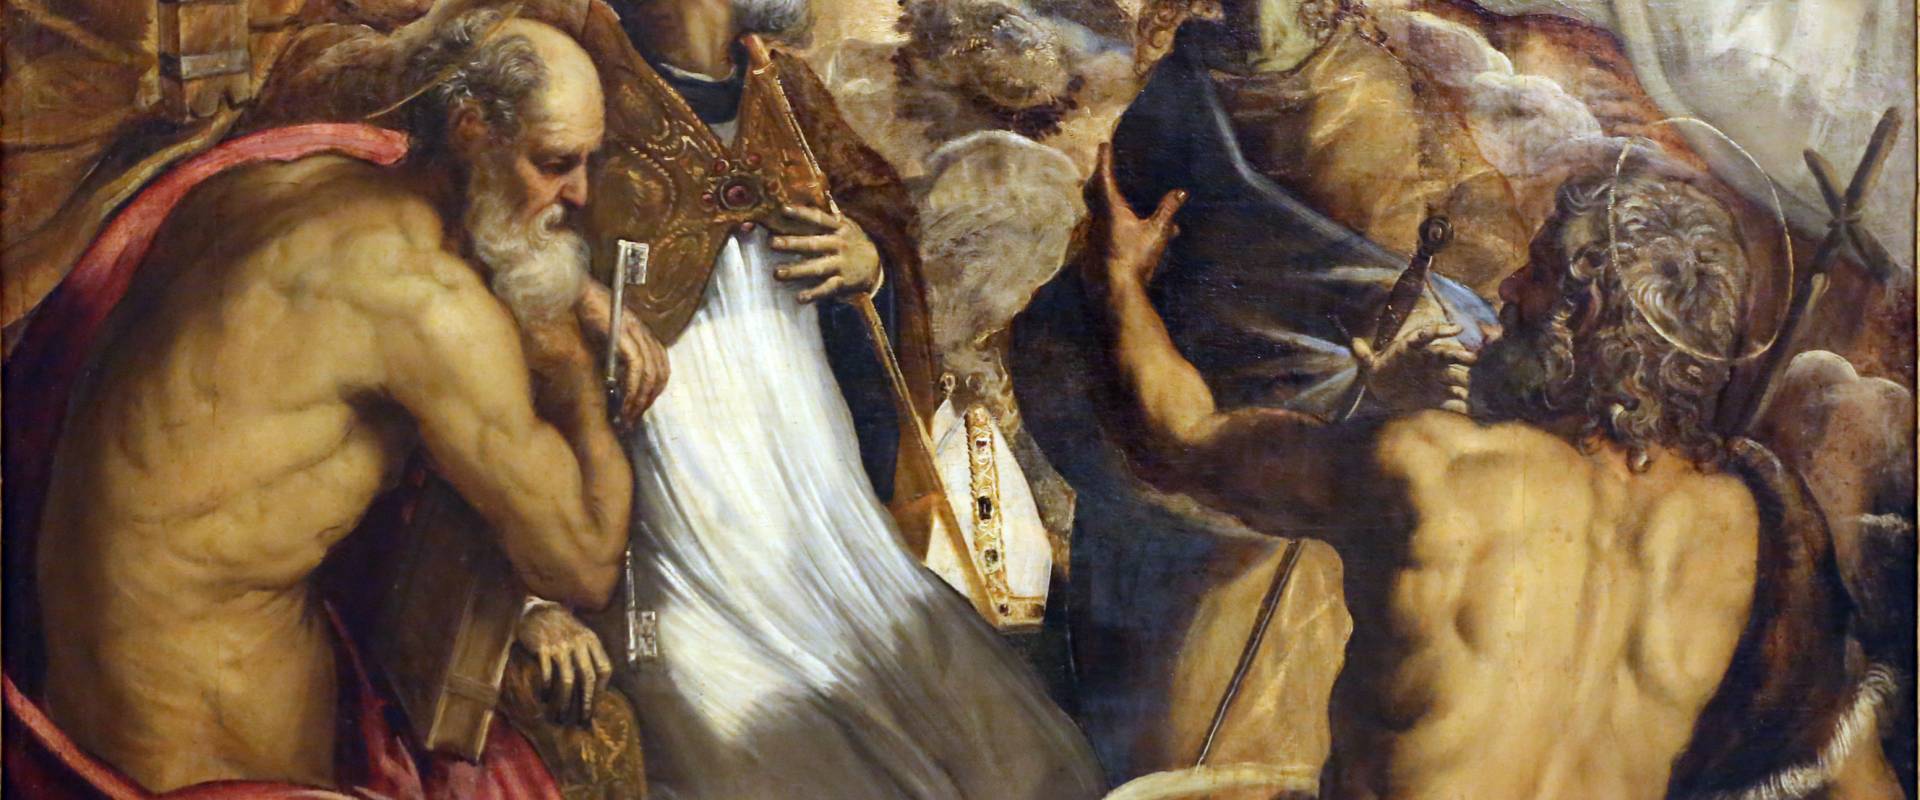 Tintoretto, madonna col bambino coi ss. caterina d'a., scolastica, pietro, agostino, battista e paolo, 1547-49 ca. 03 photo by Sailko